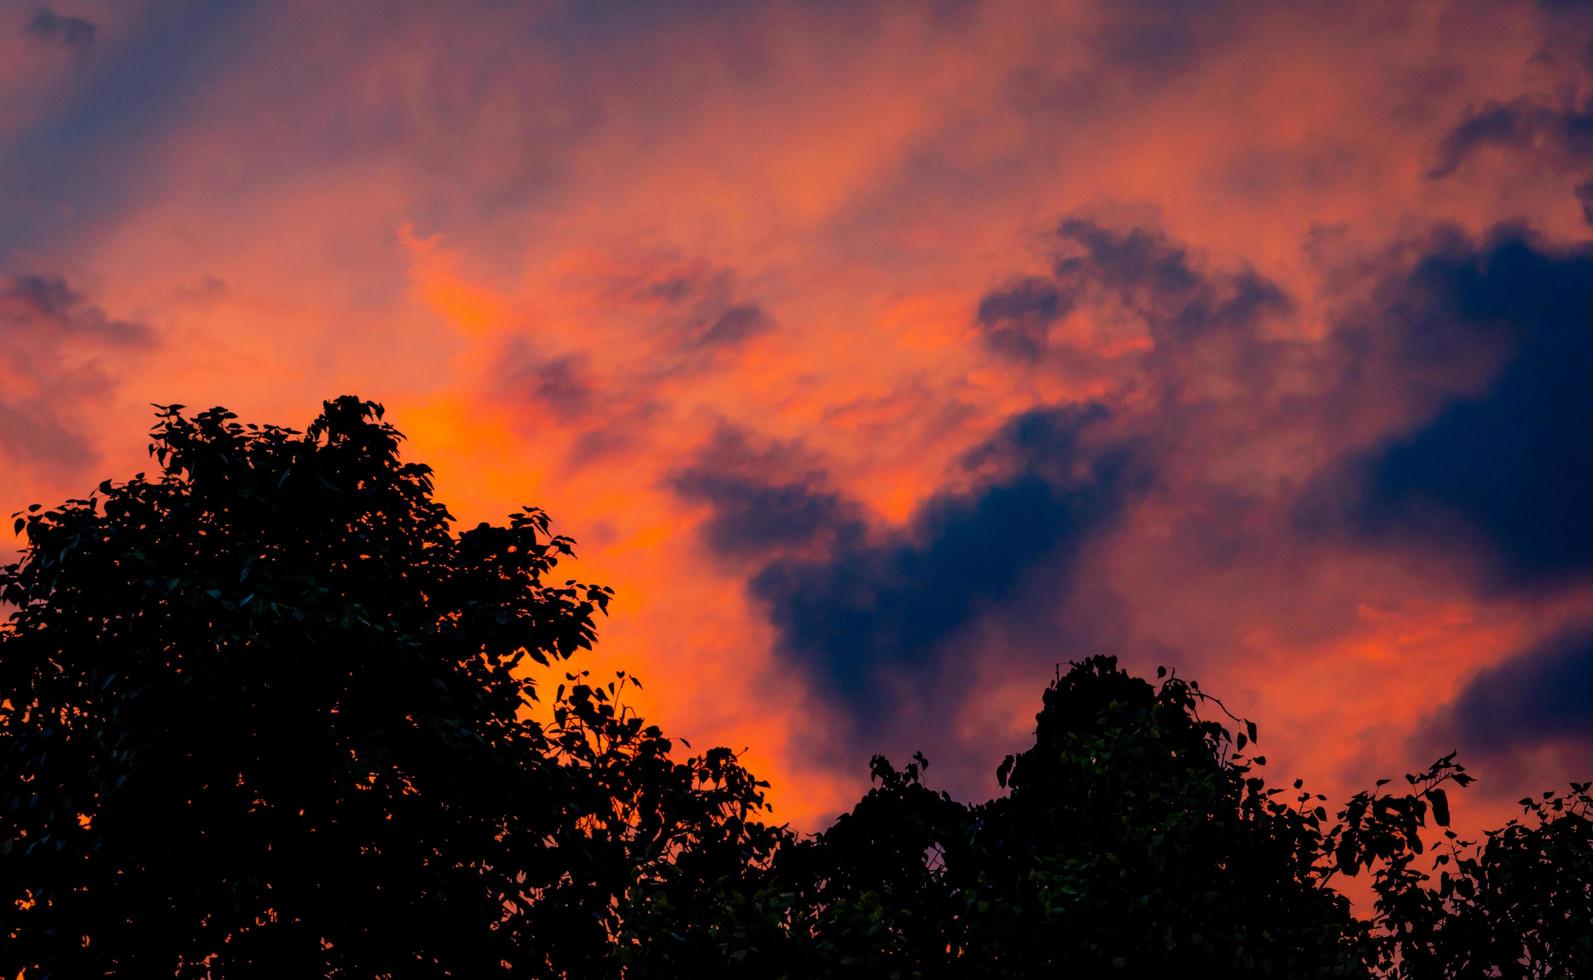 ciel rouge et orange dramatique et fond abstrait de nuages. nuages rouge-orange sur ciel coucher de soleil au-dessus de l'arbre. photo d'art du ciel au crépuscule. fond abstrait coucher de soleil. nuage en forme de coeur noir sur ciel sombre.